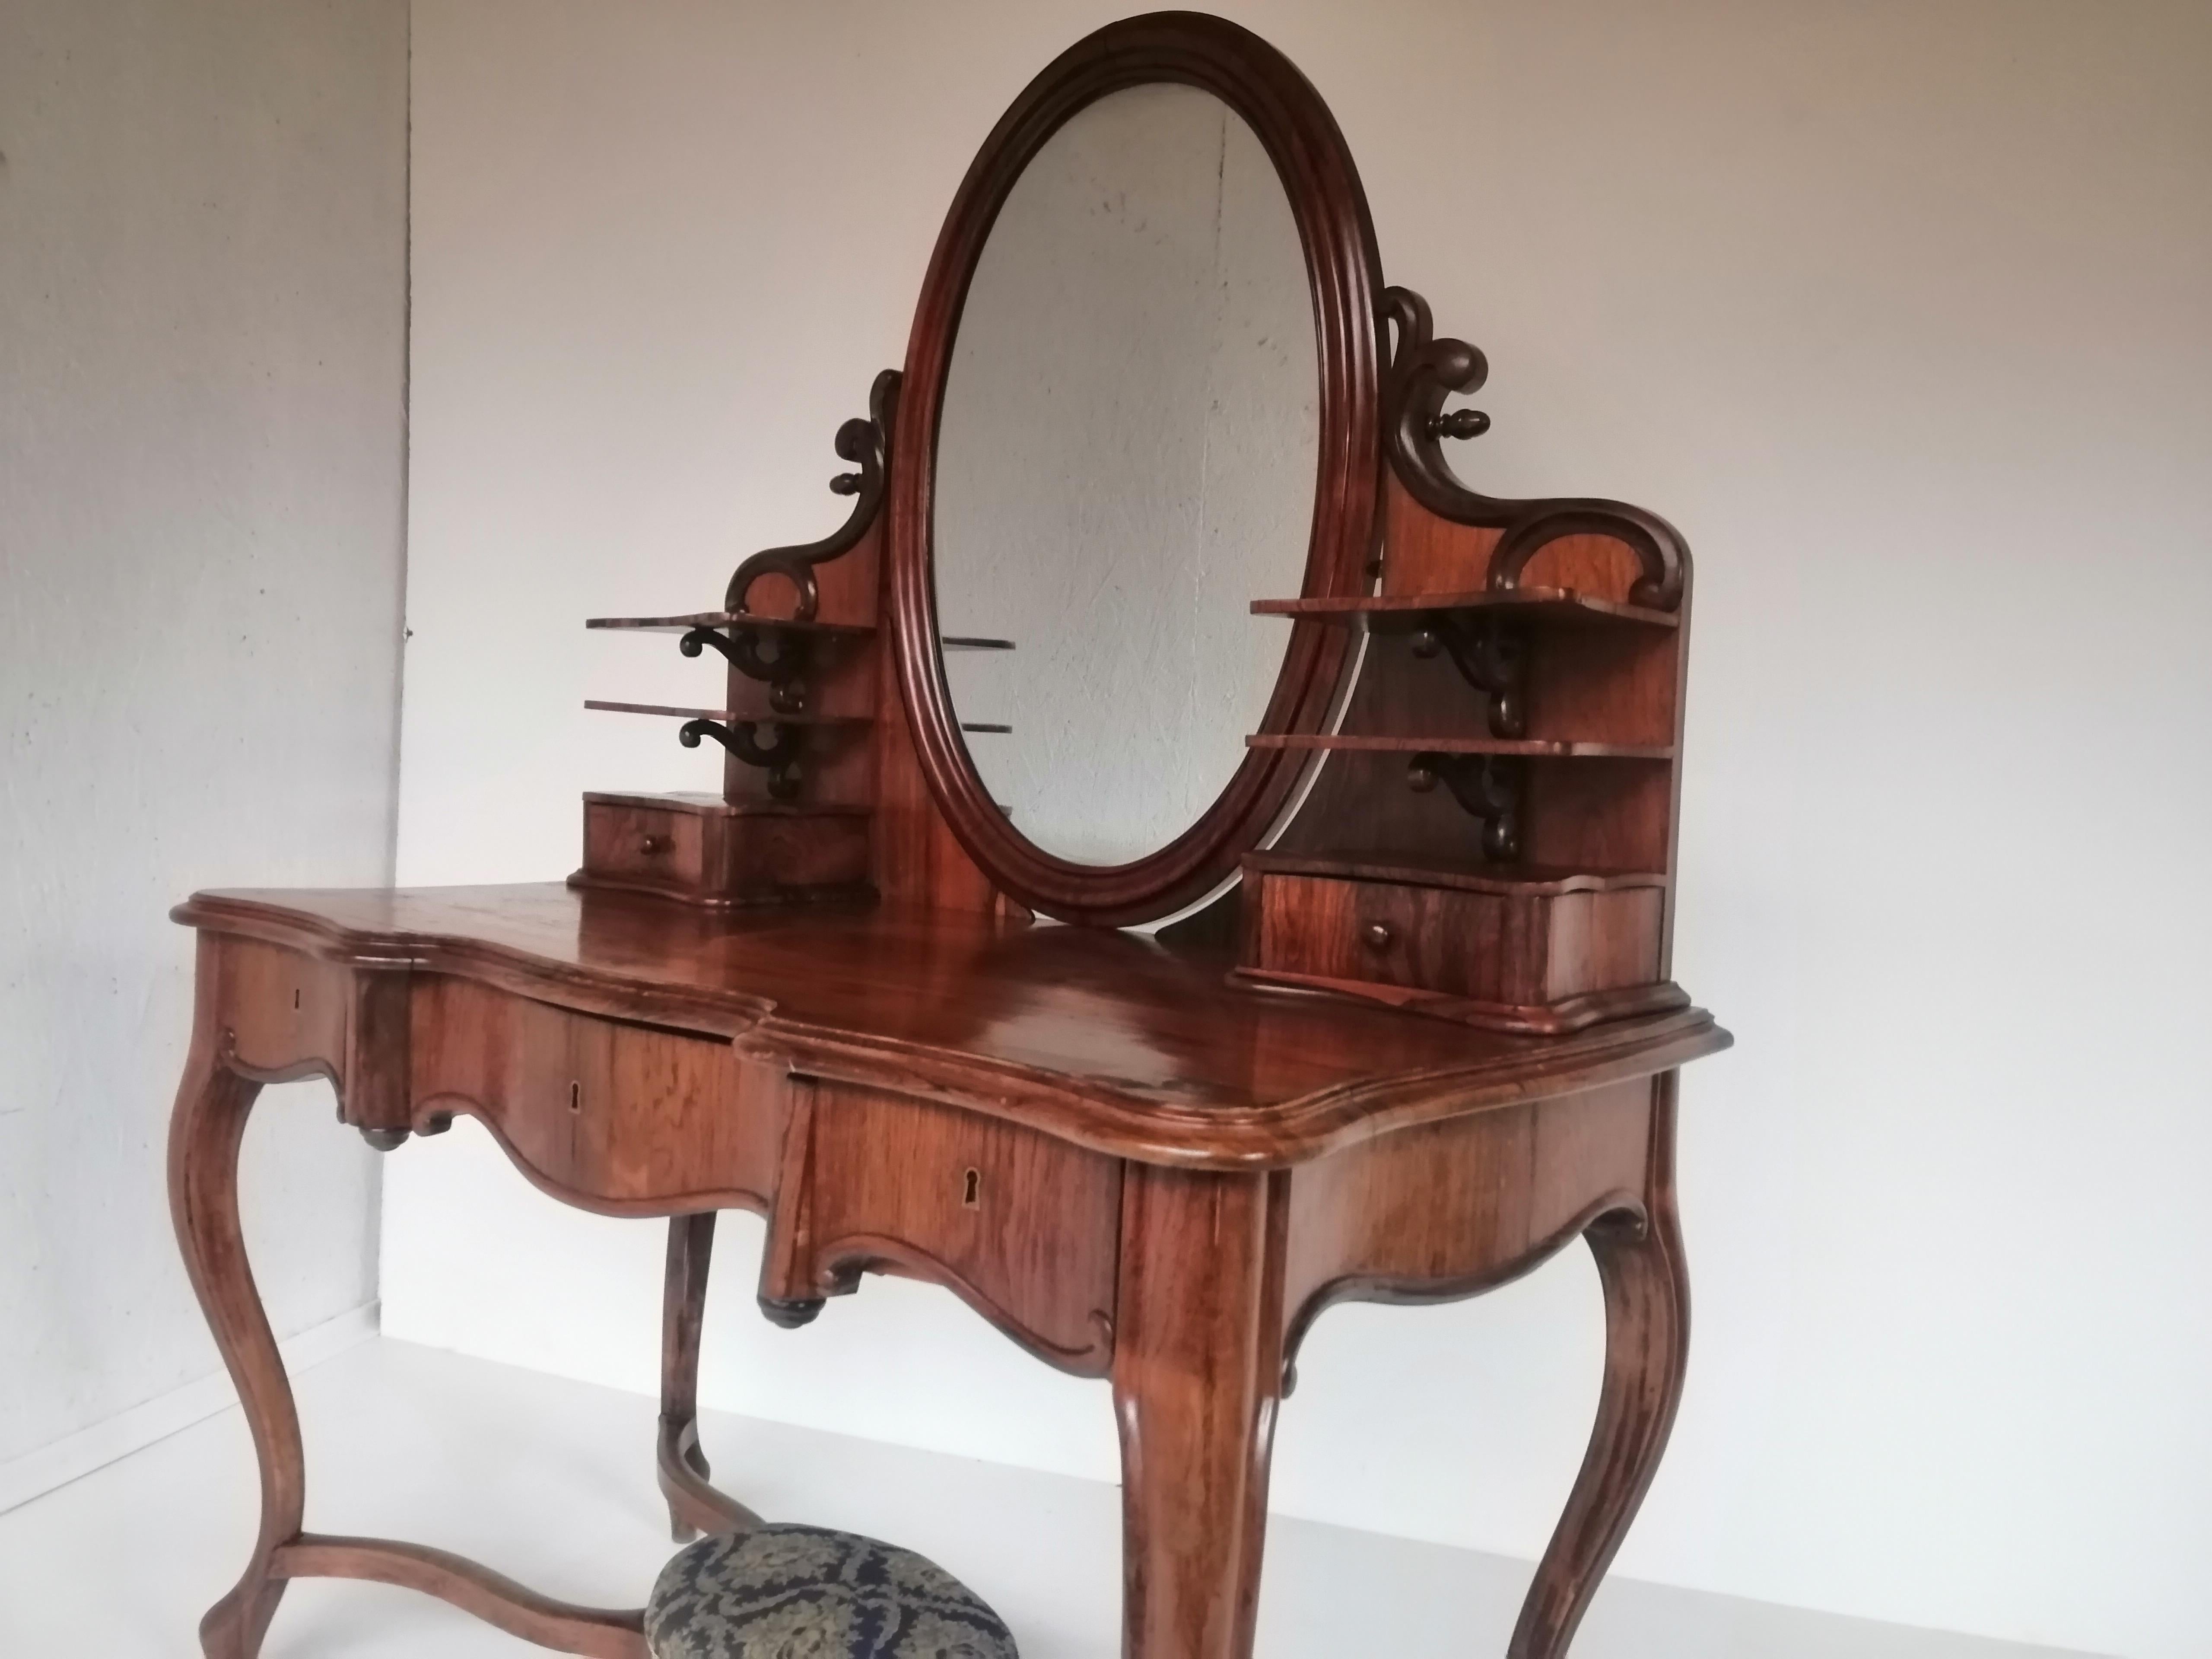 Nous présentons une coiffeuse Louis Philippe vraiment unique datant de 1860.

Les meubles de notre atelier sont recouverts manuellement d'un vernis laqué brillant.
Un meuble qui convient à tout type d'intérieur.
Nous expédions les meubles dans